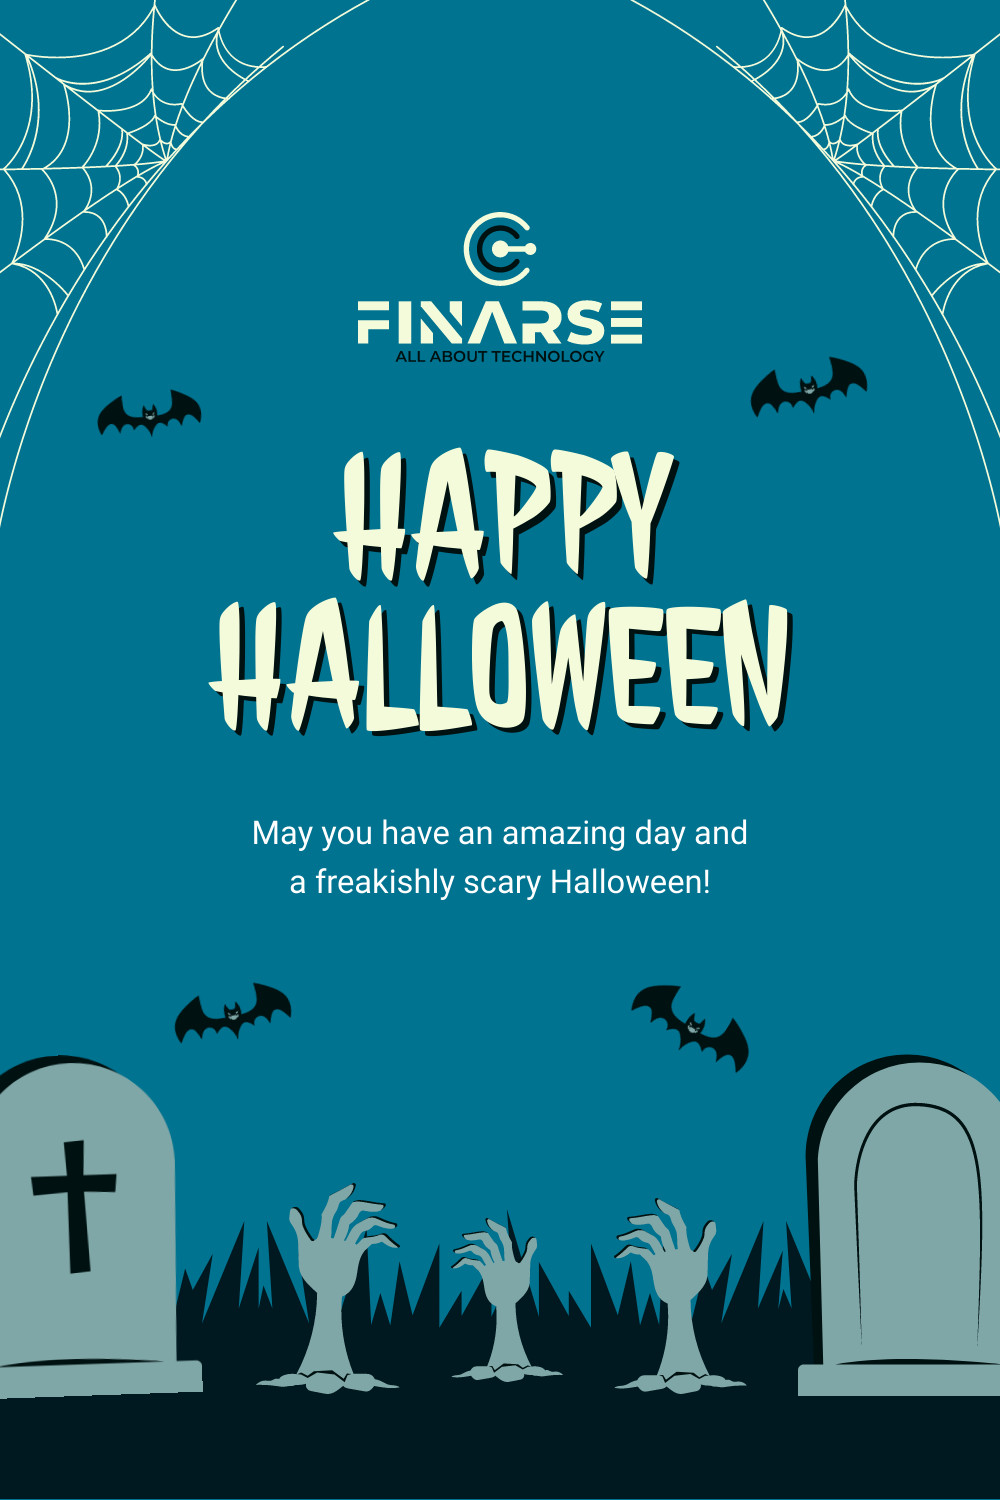 Freakishly Scary Halloween 